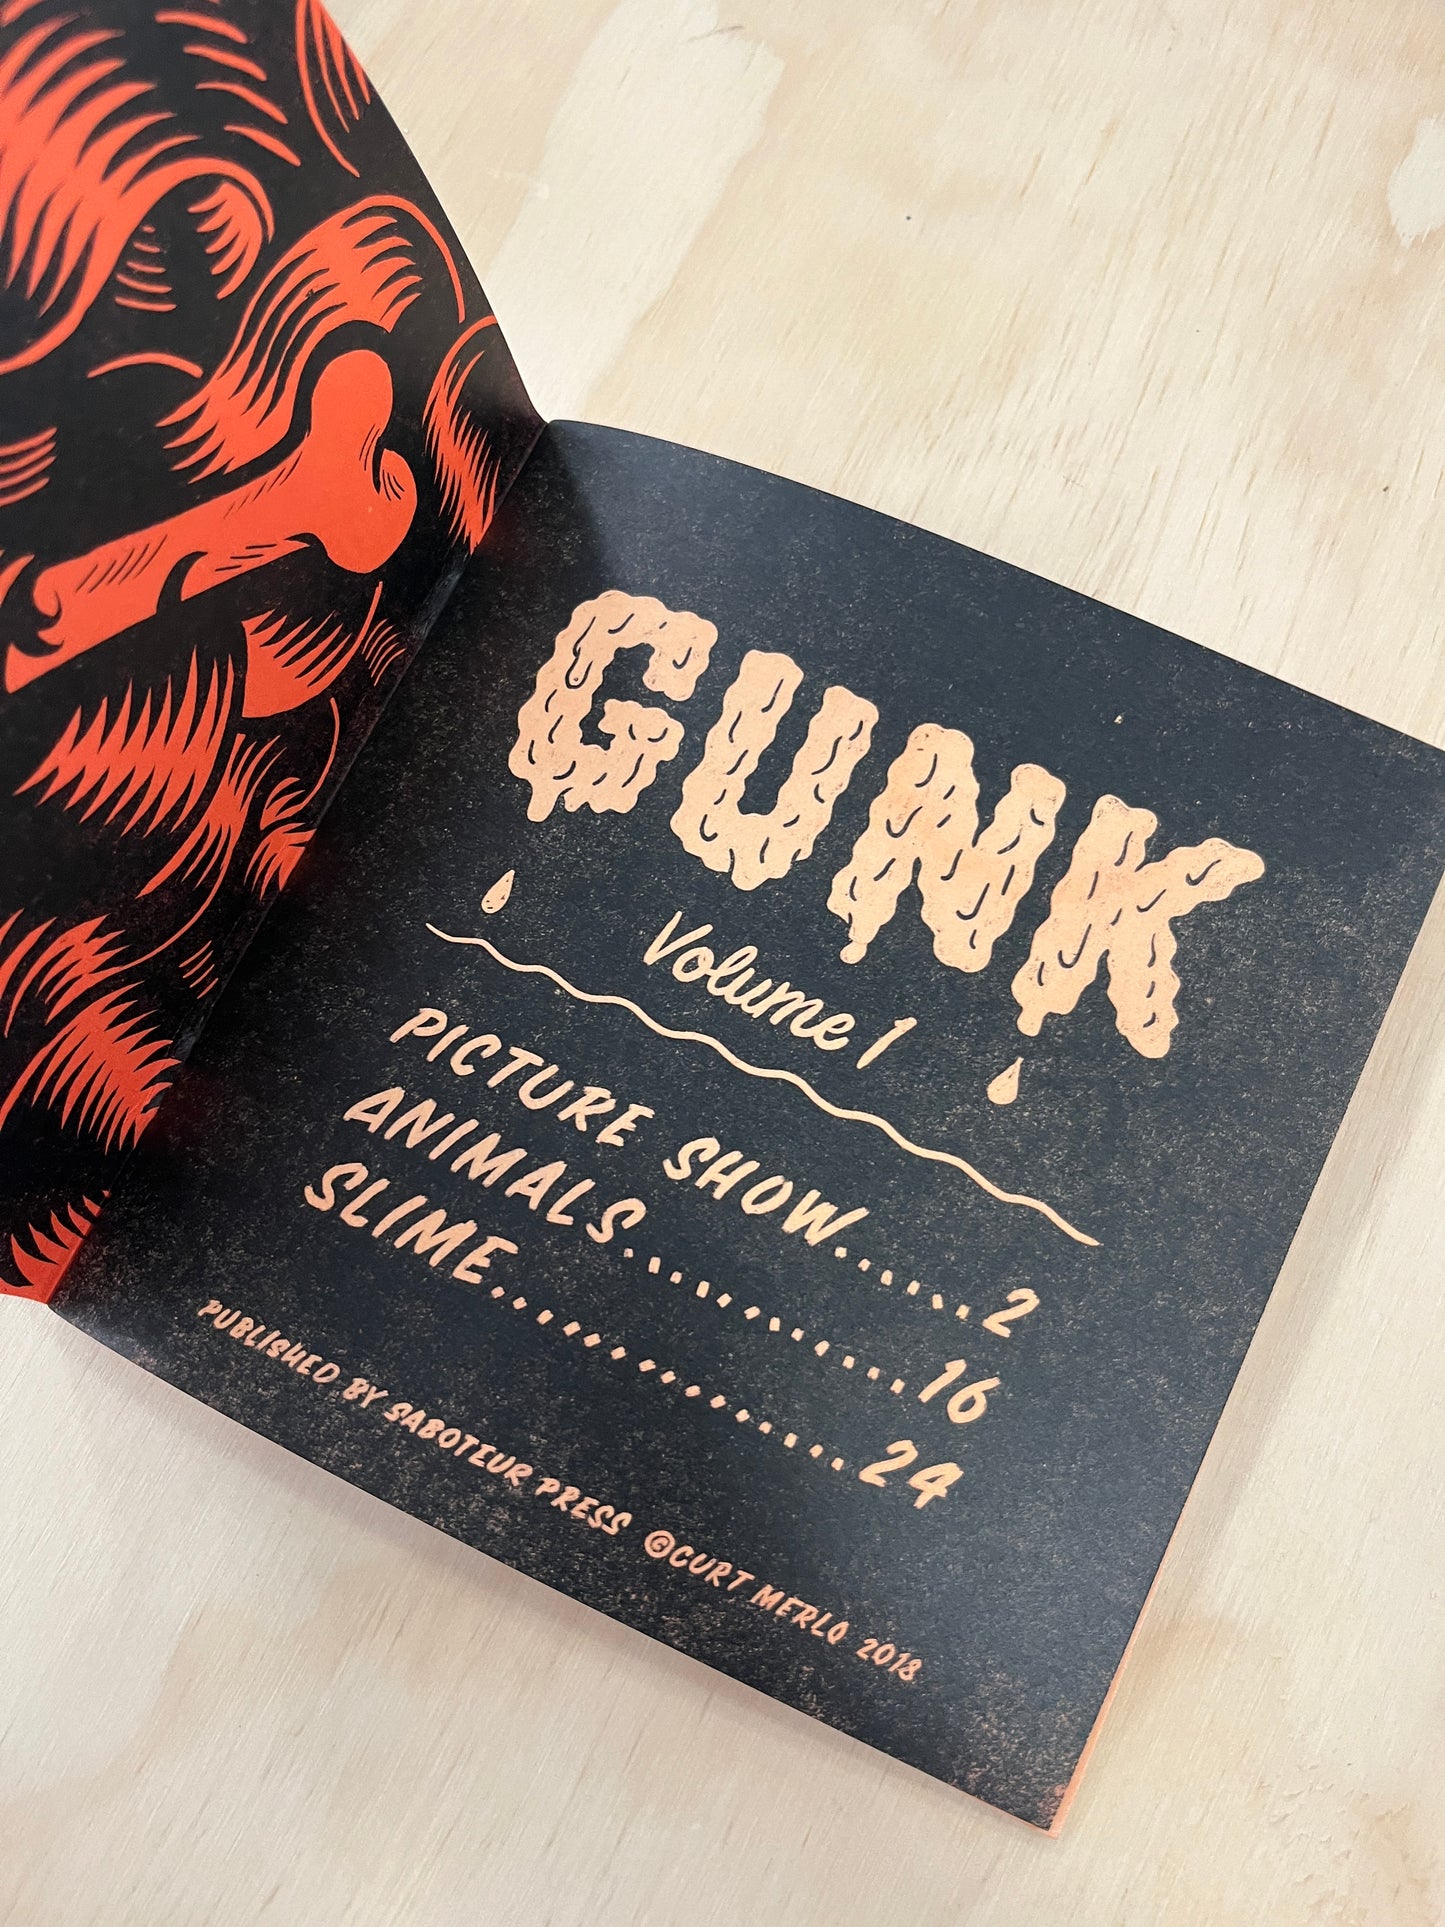 Gunk Vol. 1